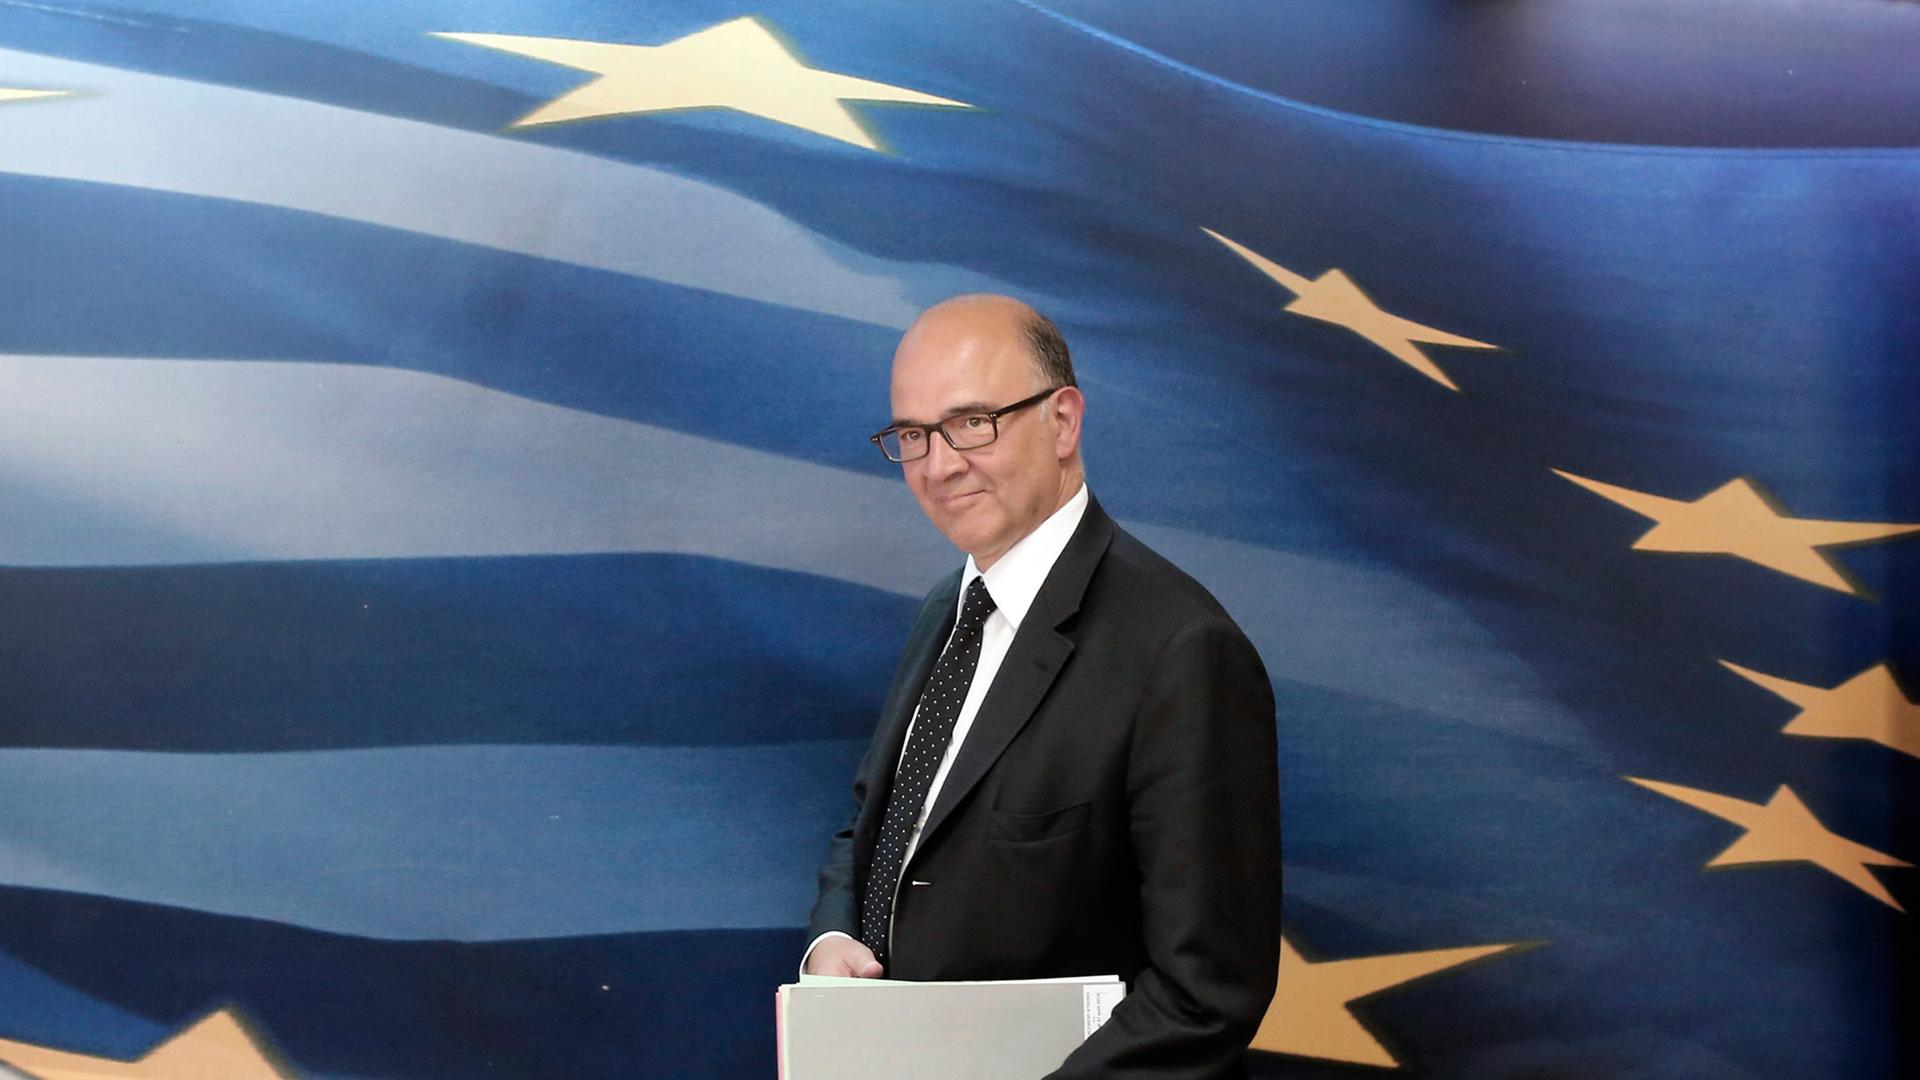 Frankreichs ehemaliger Finanzminister und Kandidat für die EU-Kommission Pierre Moscovici, geht vor einer großen blauen EU-Flagge mit gelben Sternen und weißen Streifen entlang